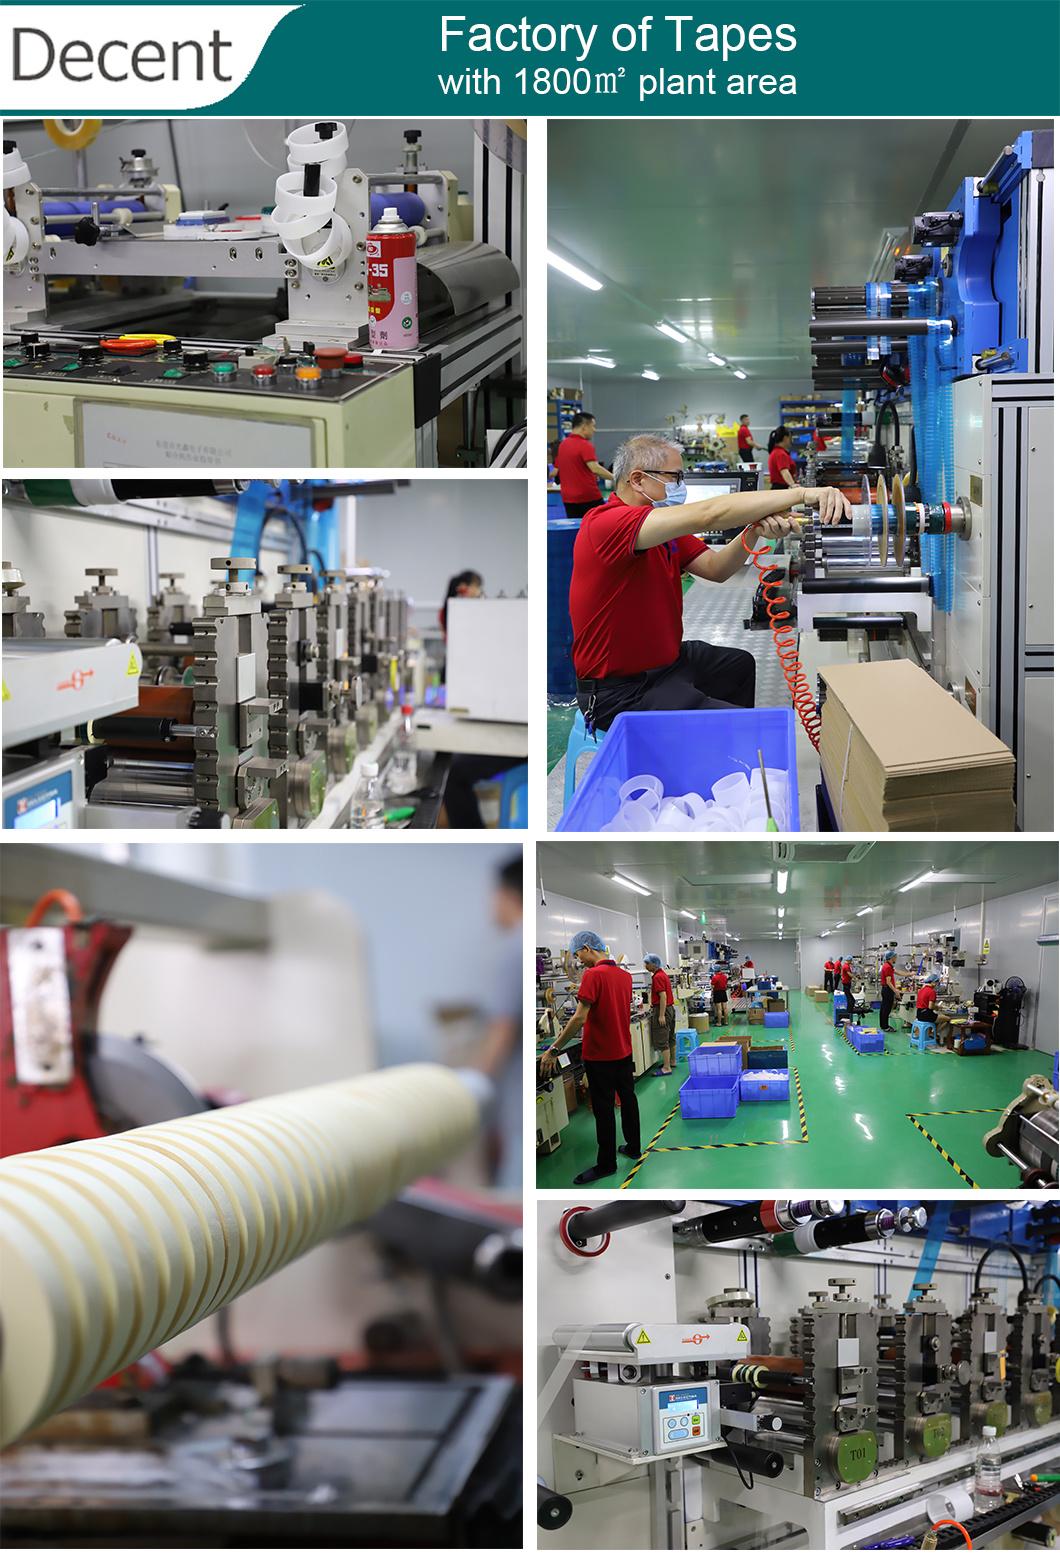 China Supplier Embossed Vacuum Plastic Frozen Food vacuum Bag